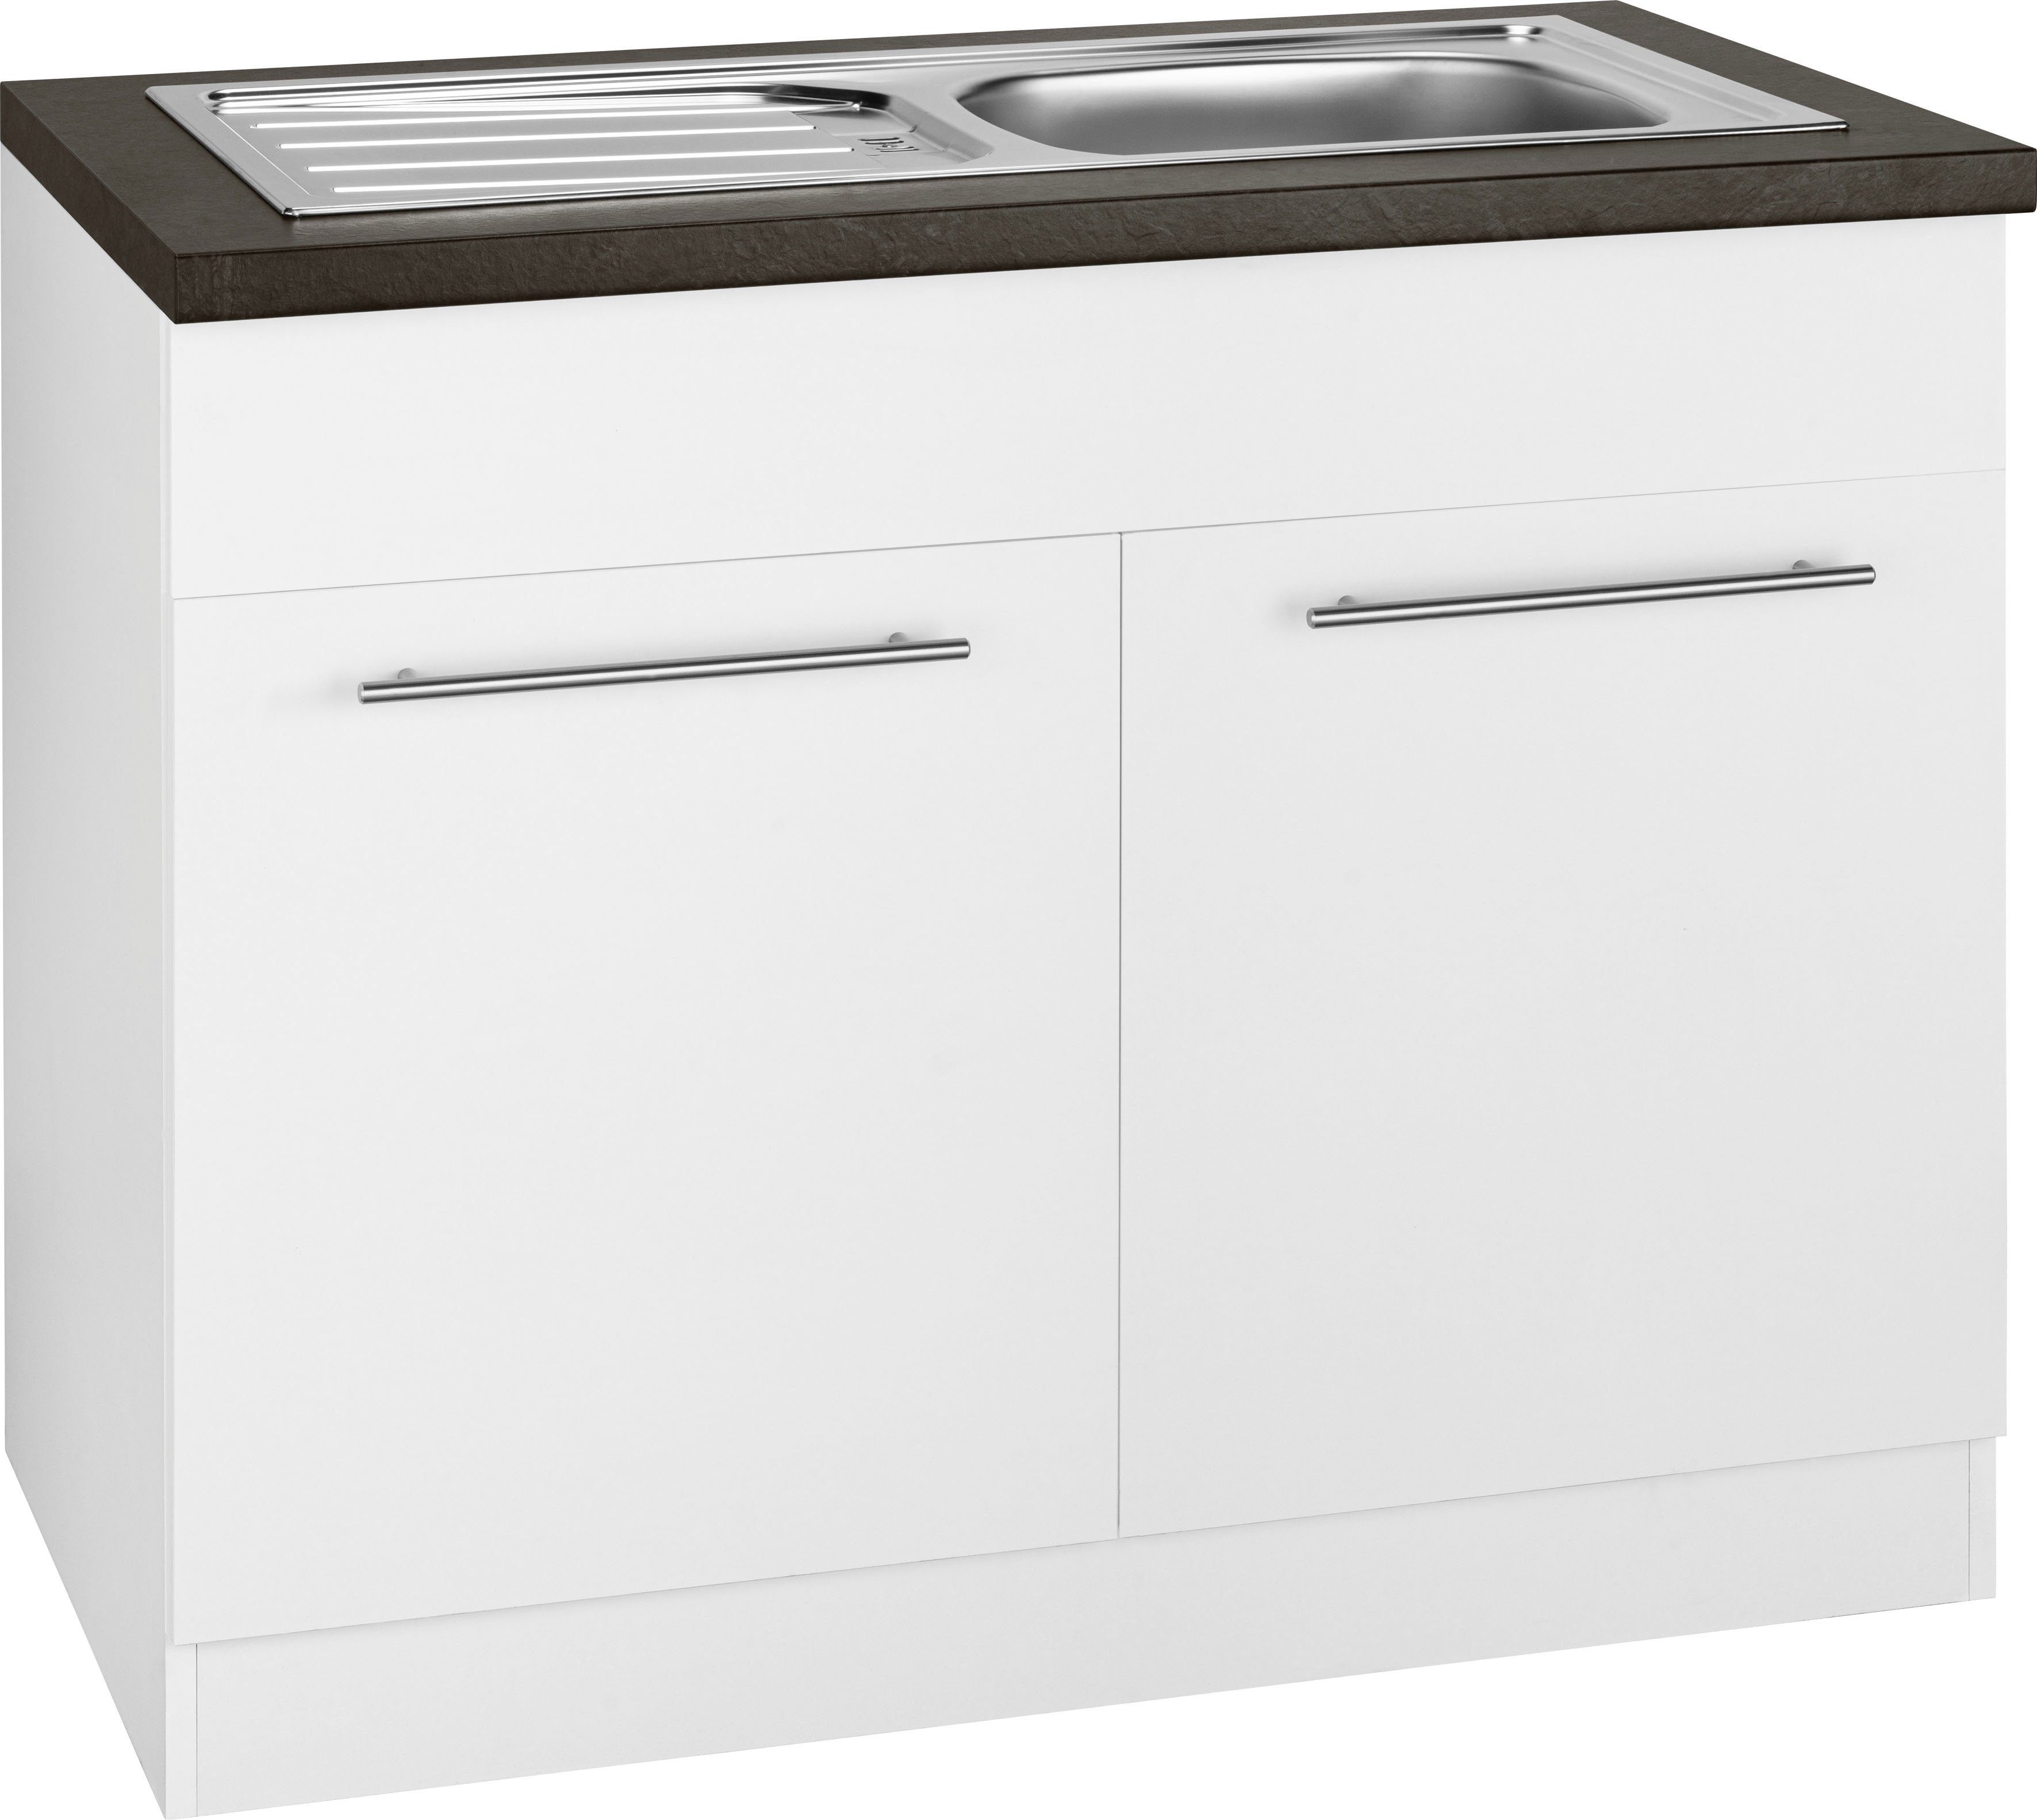 wiho Küchen Spülenschrank Unna 100 cm breit weiß/granit schwarz | Weiß